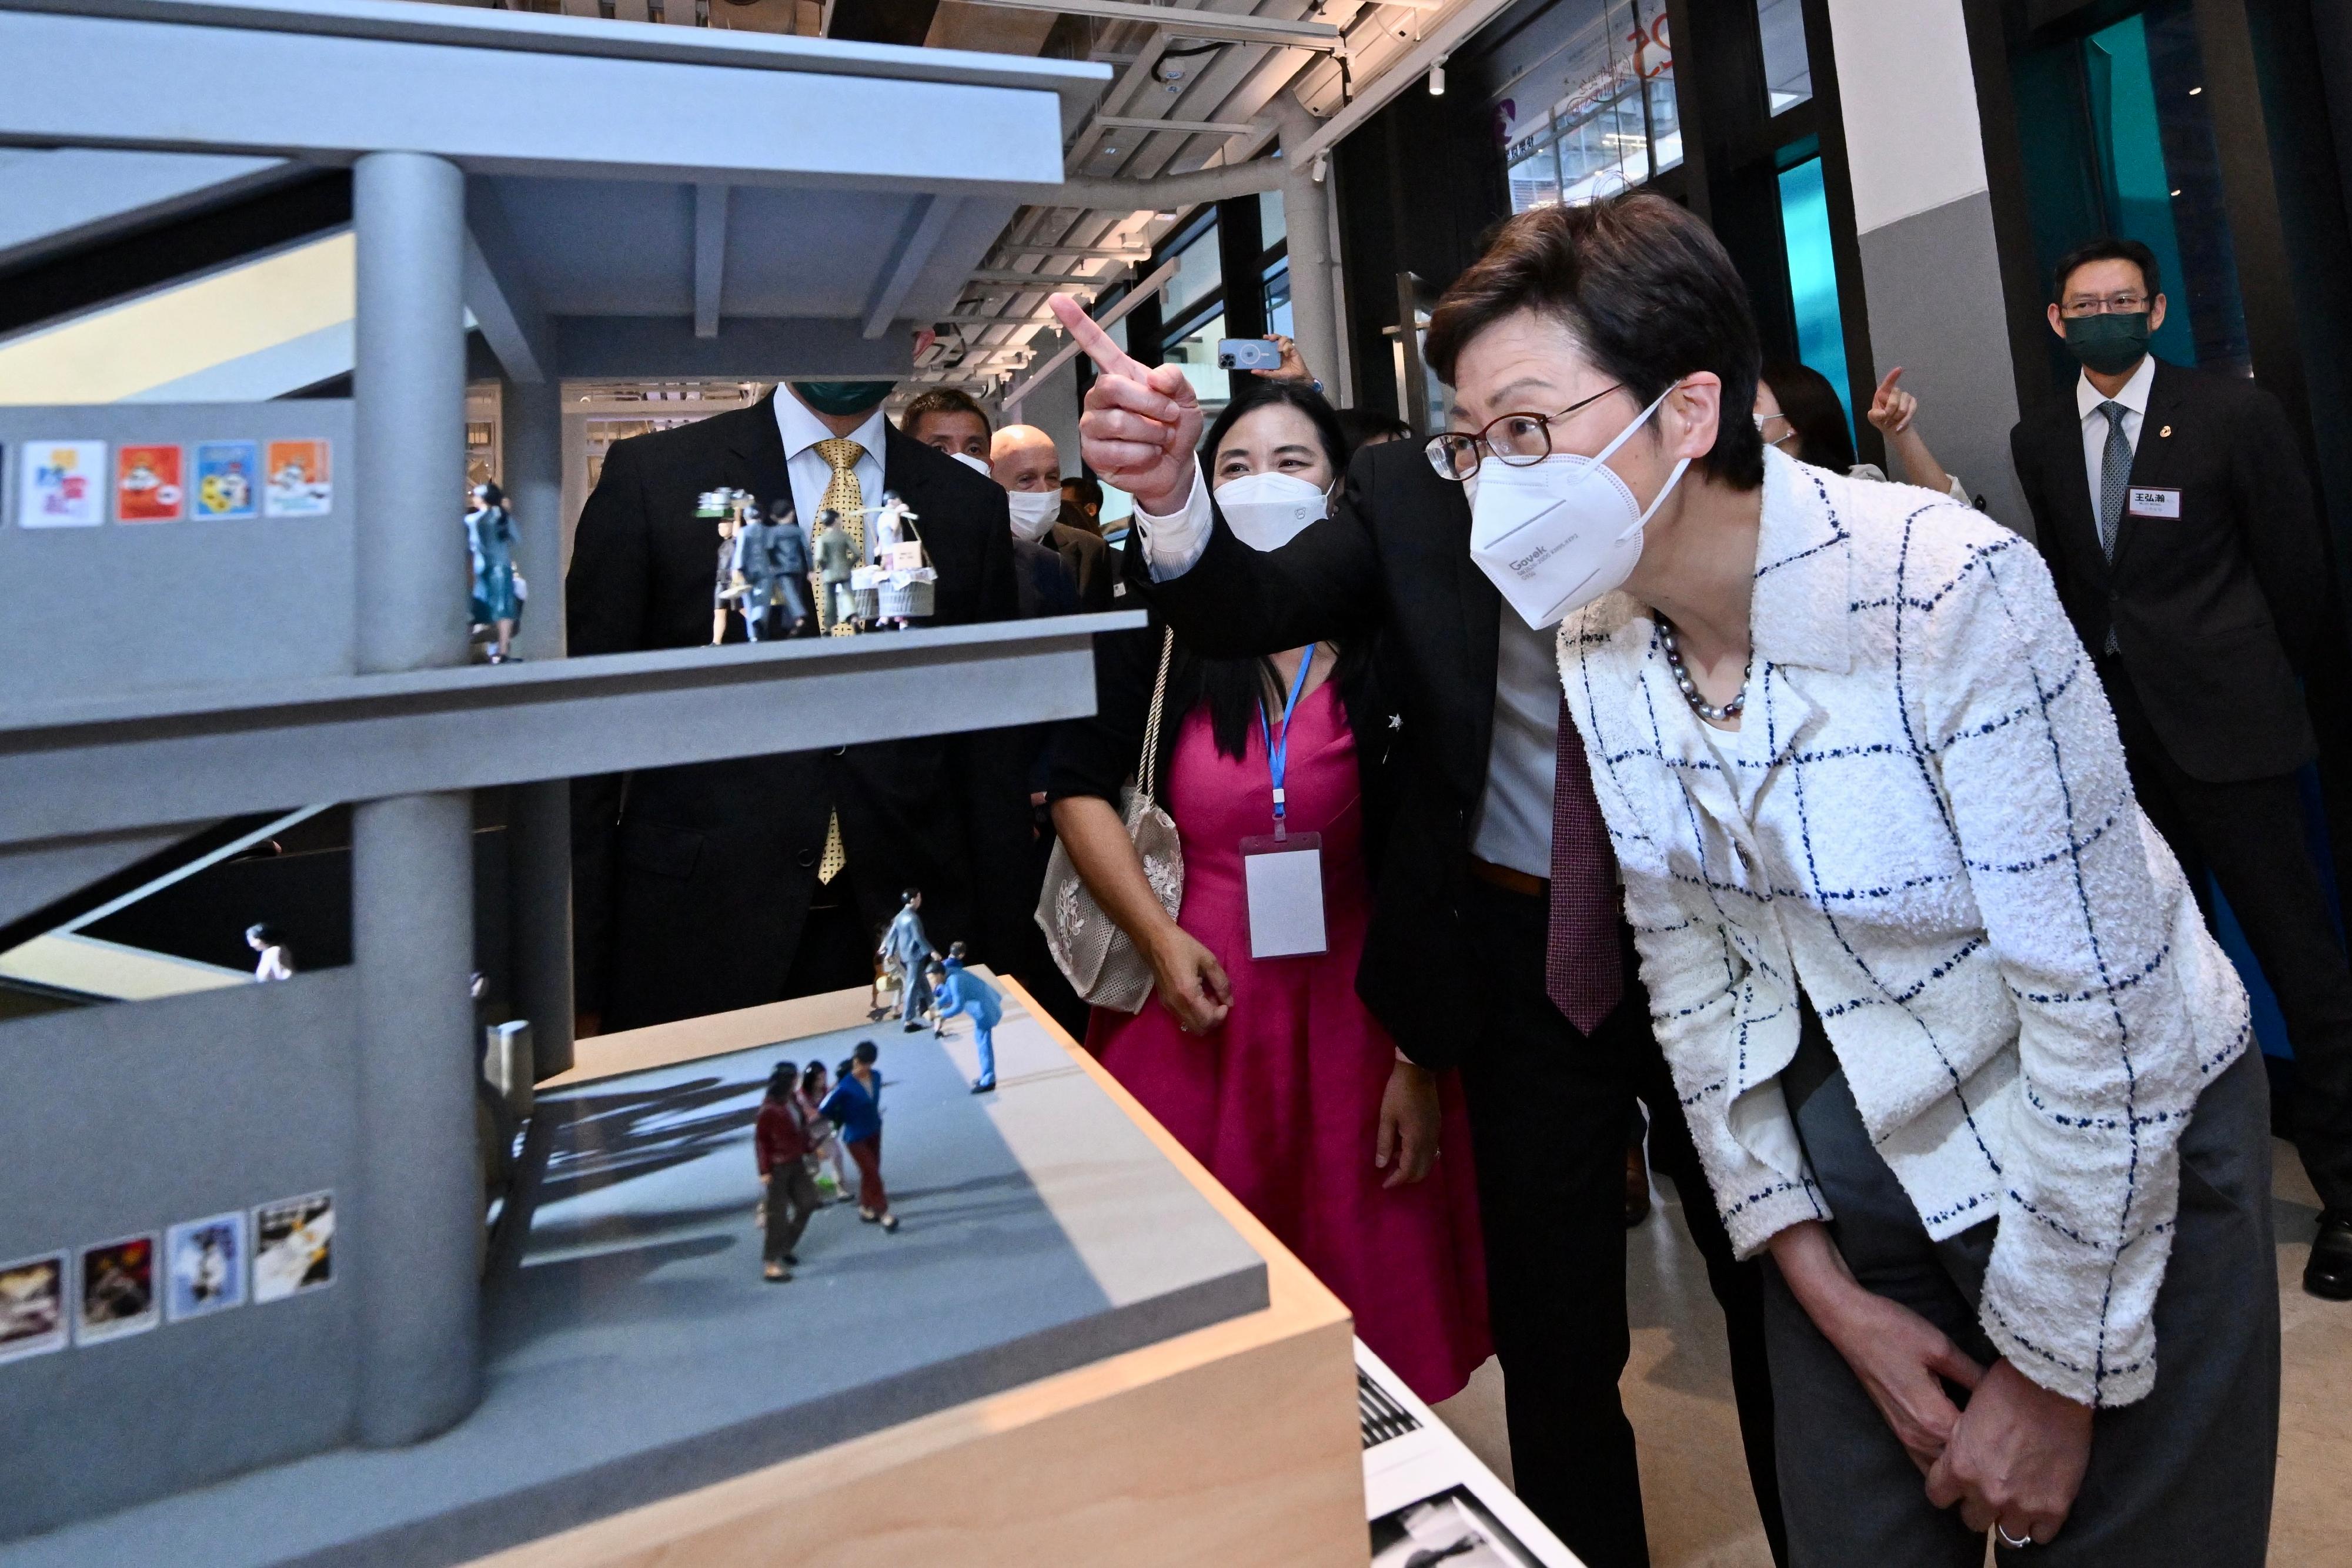 行政長官林鄭月娥今日（六月一日）出席《細塑今昔•智建未來》微型藝術展。圖示林鄭月娥（右）參觀展覽。